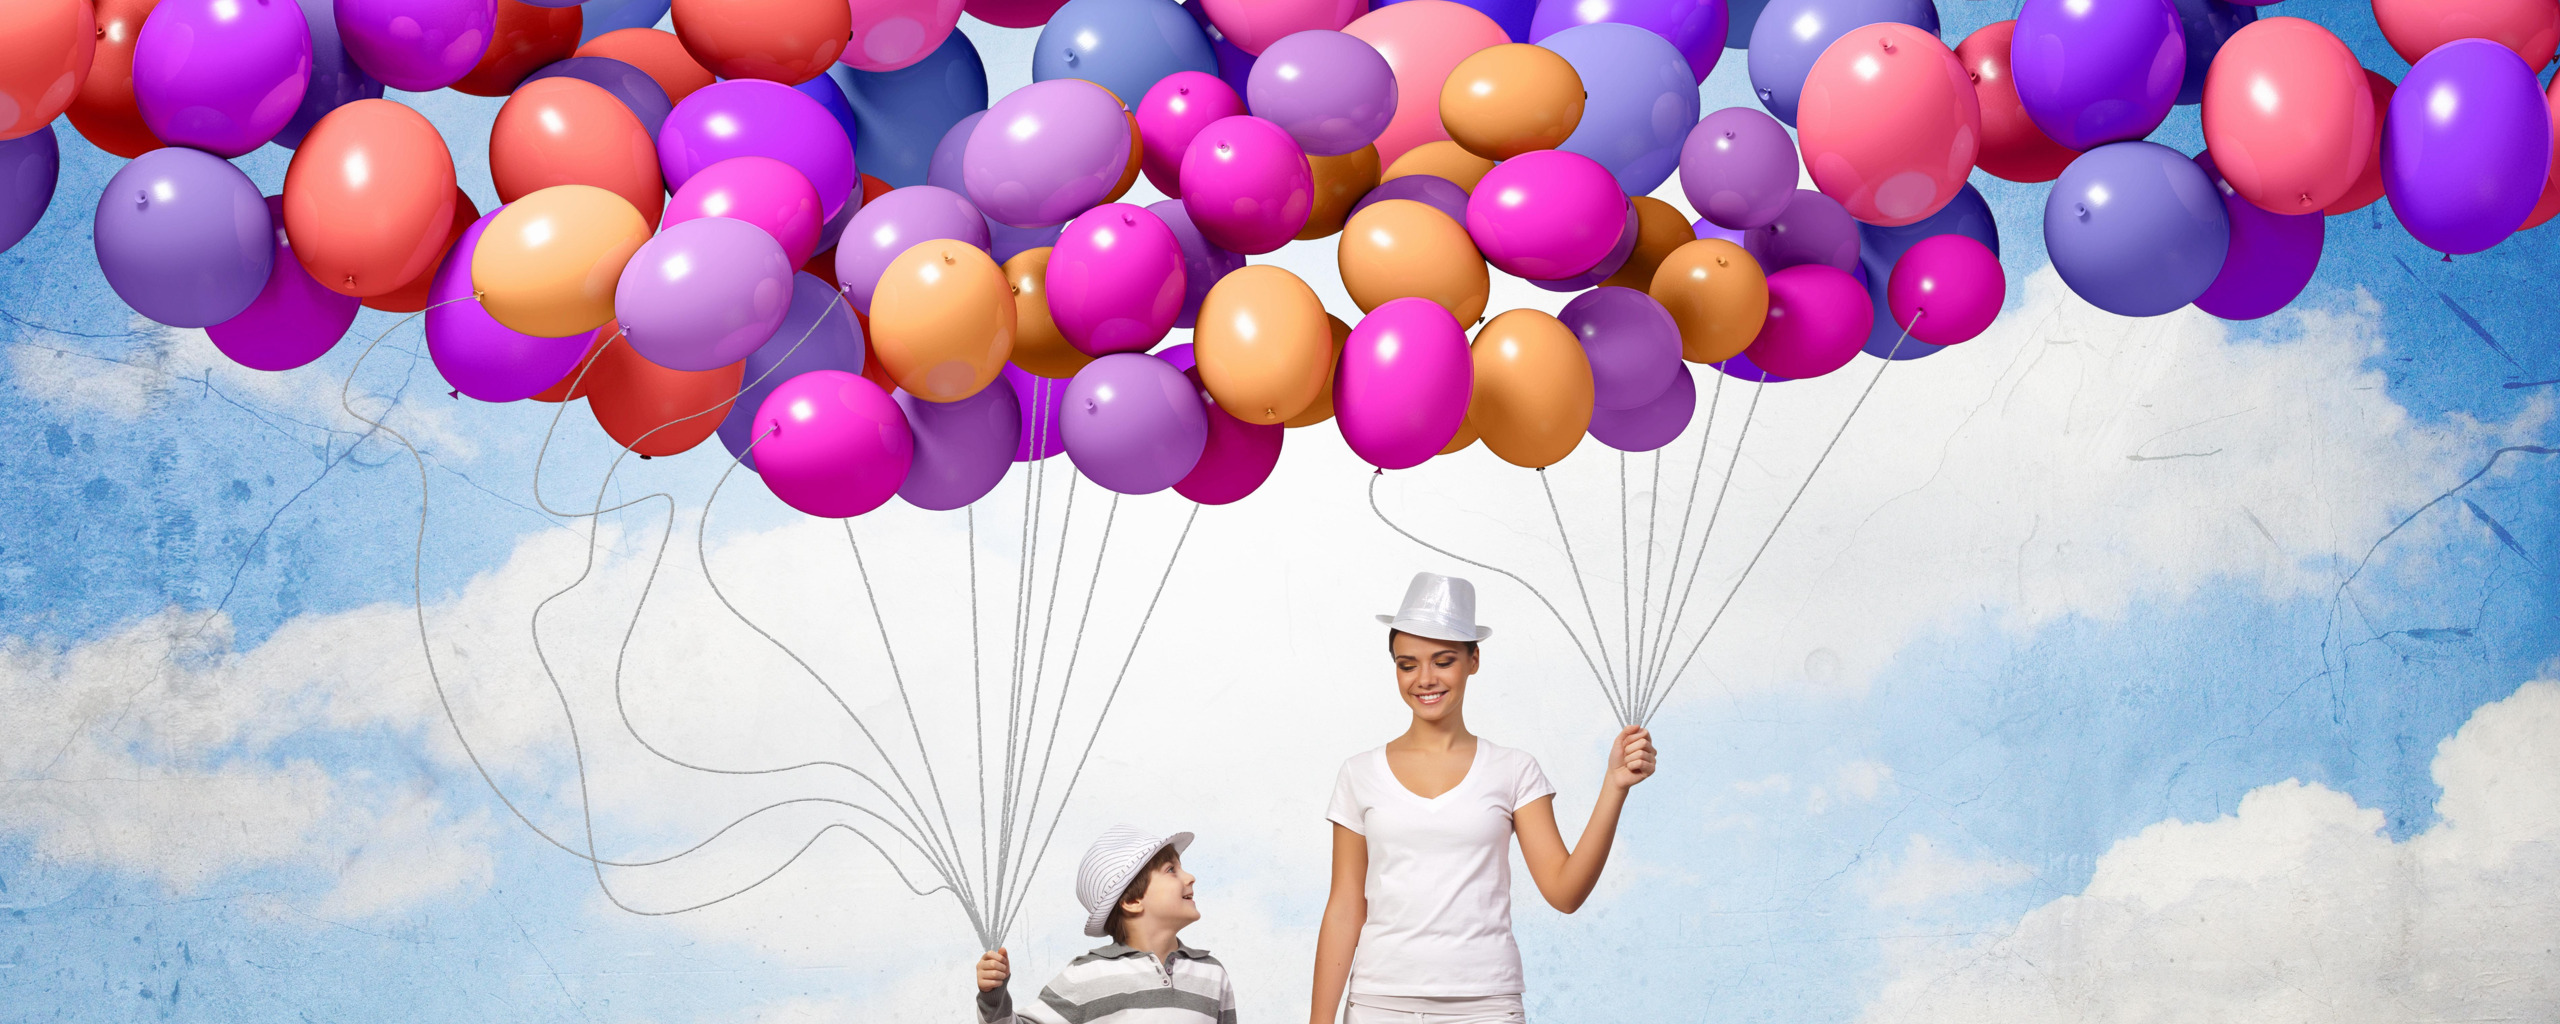 Шар шарик доставка воздушных. Воздушные шары. Фон с воздушными шарами. Воздушный шар. Баннер с шарами.